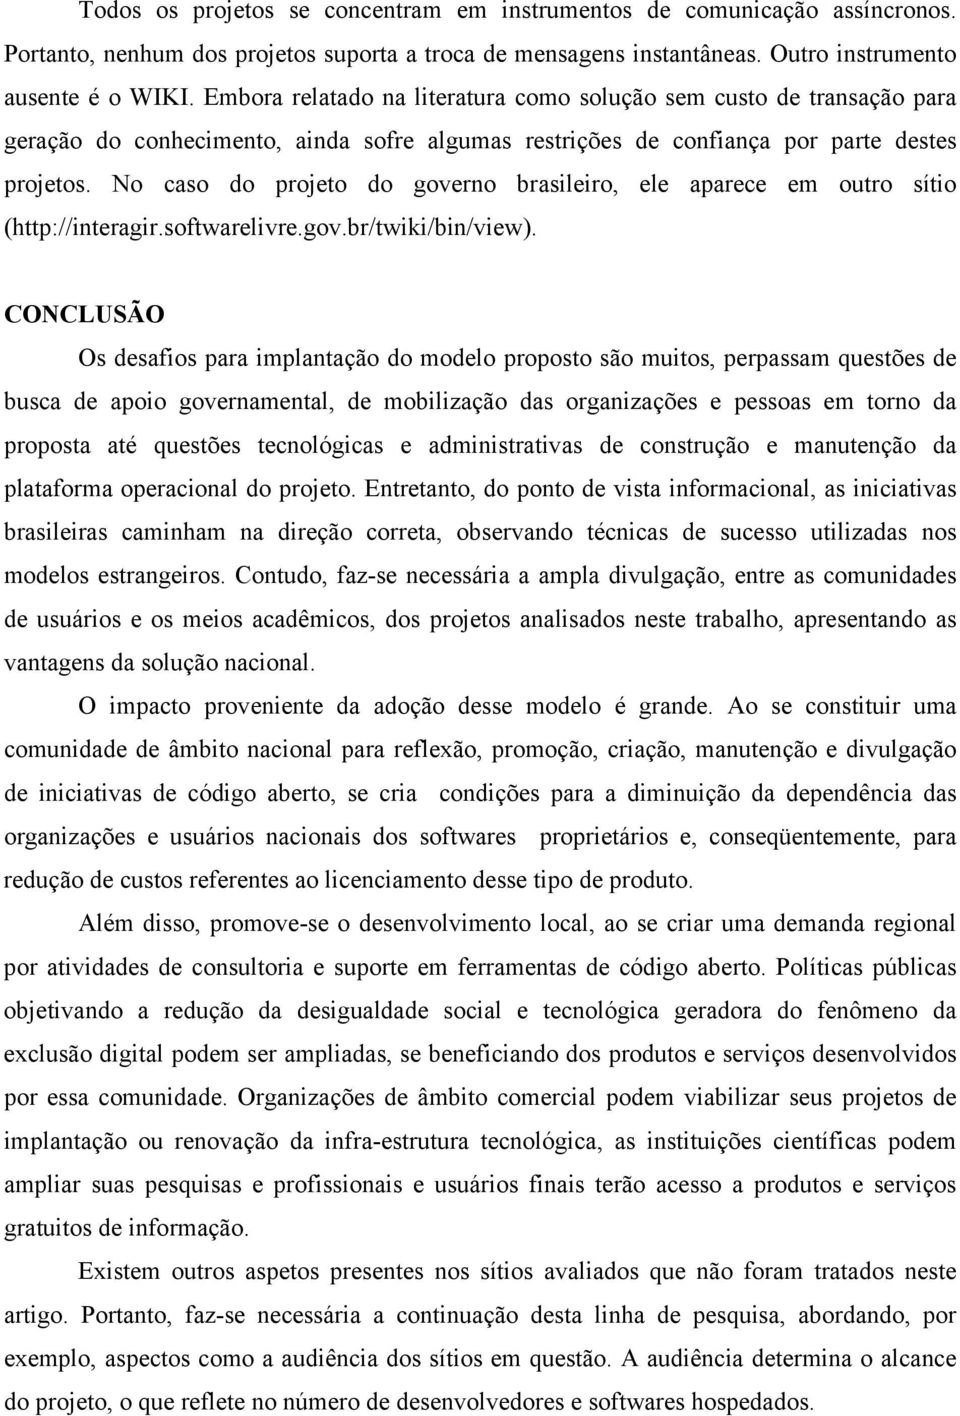 No caso do projeto do governo brasileiro, ele aparece em outro sítio (http://interagir.softwarelivre.gov.br/twiki/bin/view).